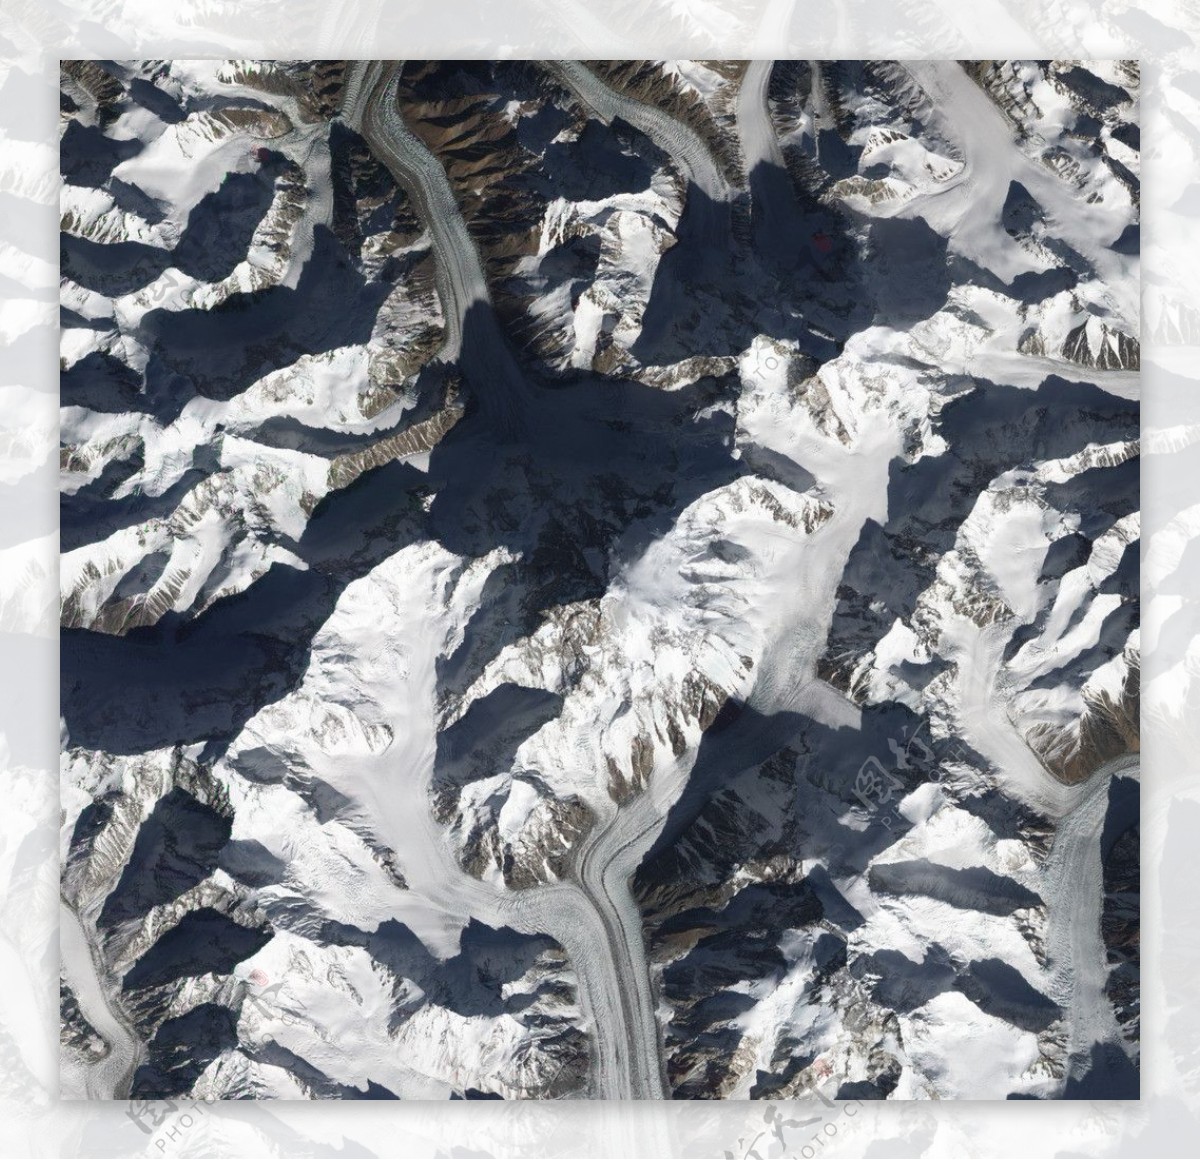 喀喇昆仑山脉图片